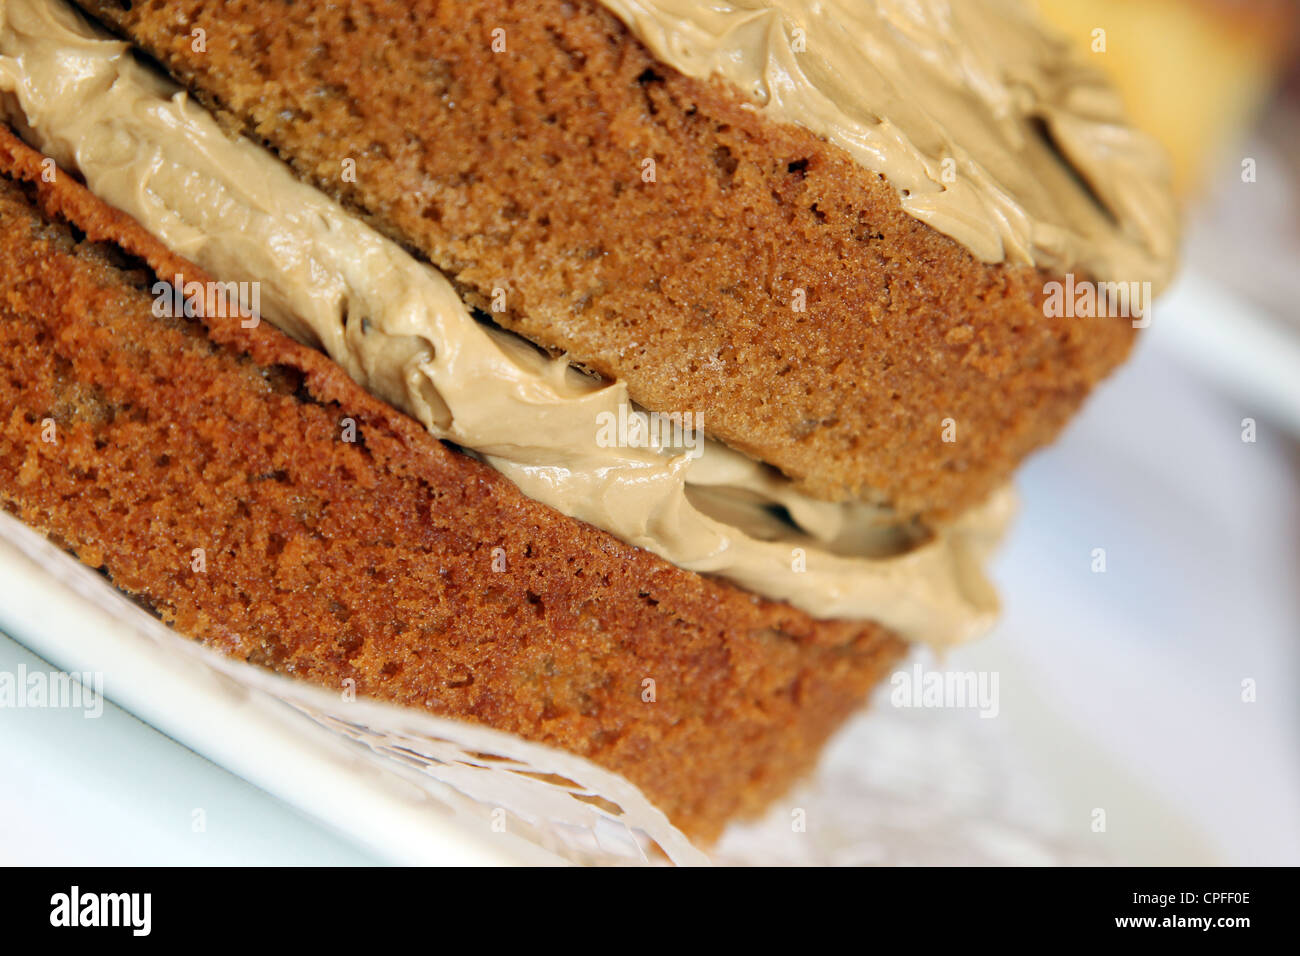 Coffee sponge cake Stock Photo